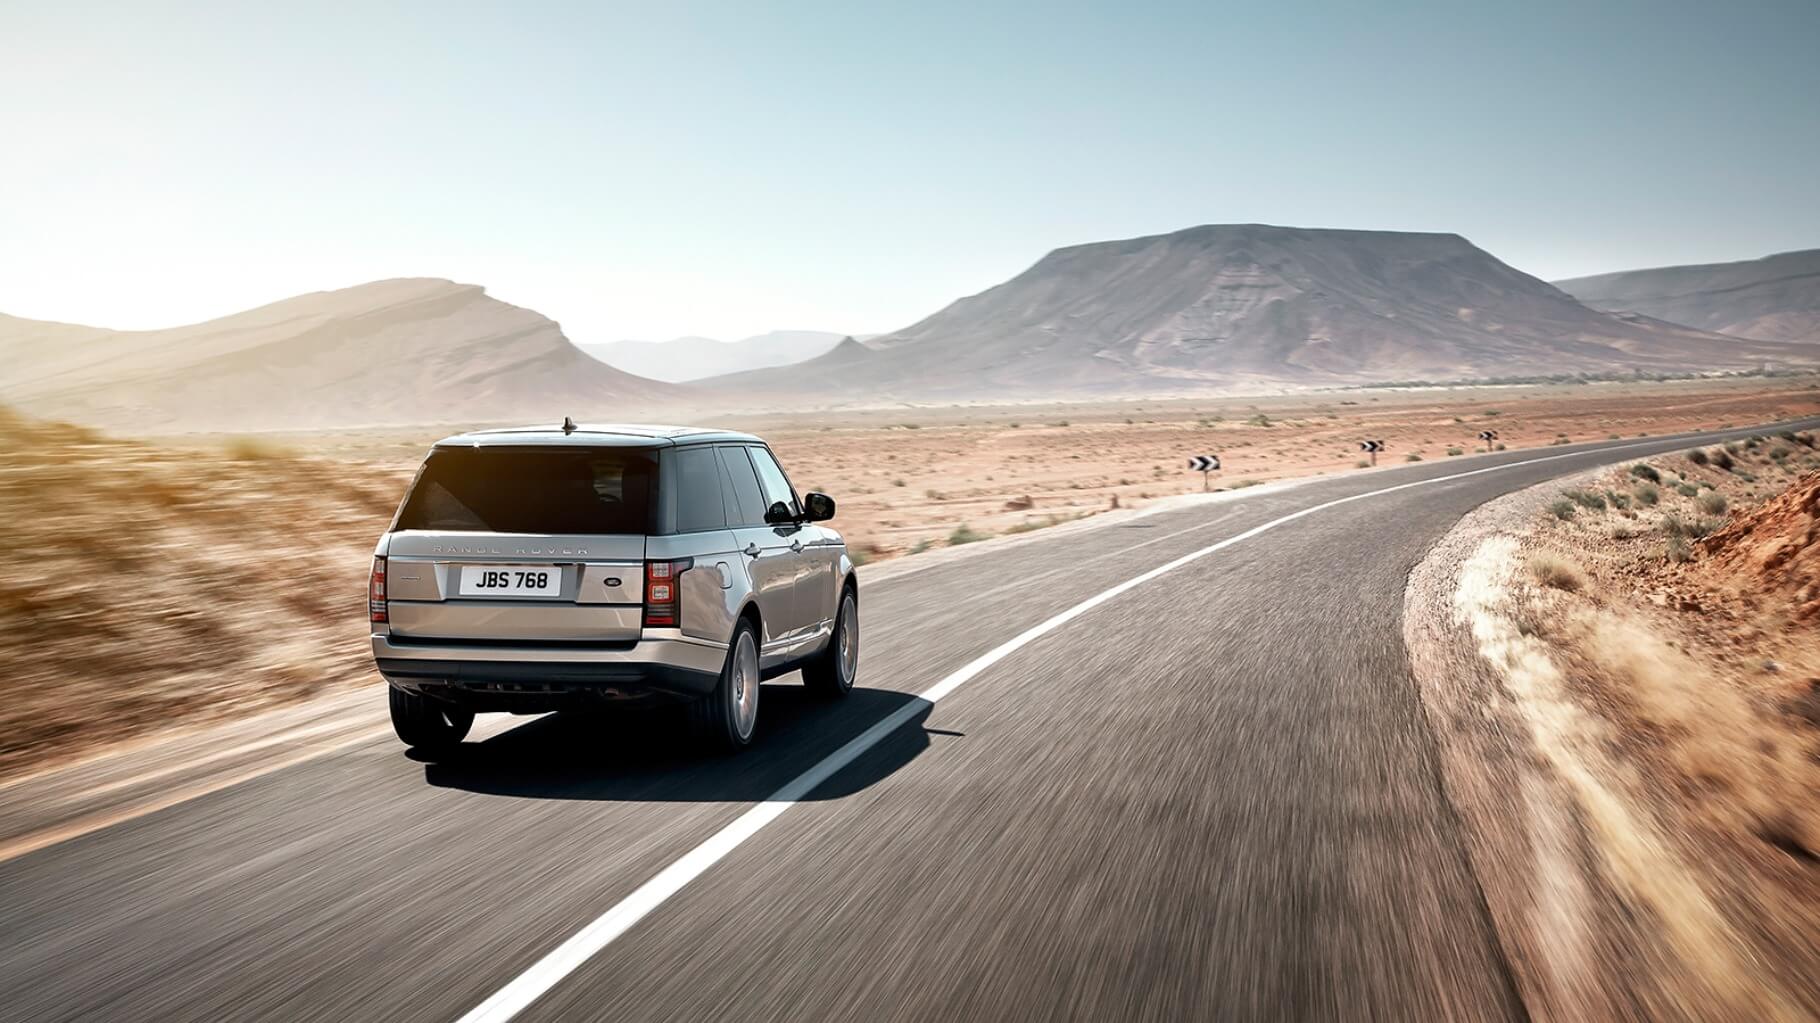 Range Rover Vogue 4.4 (Autobiography / SE)